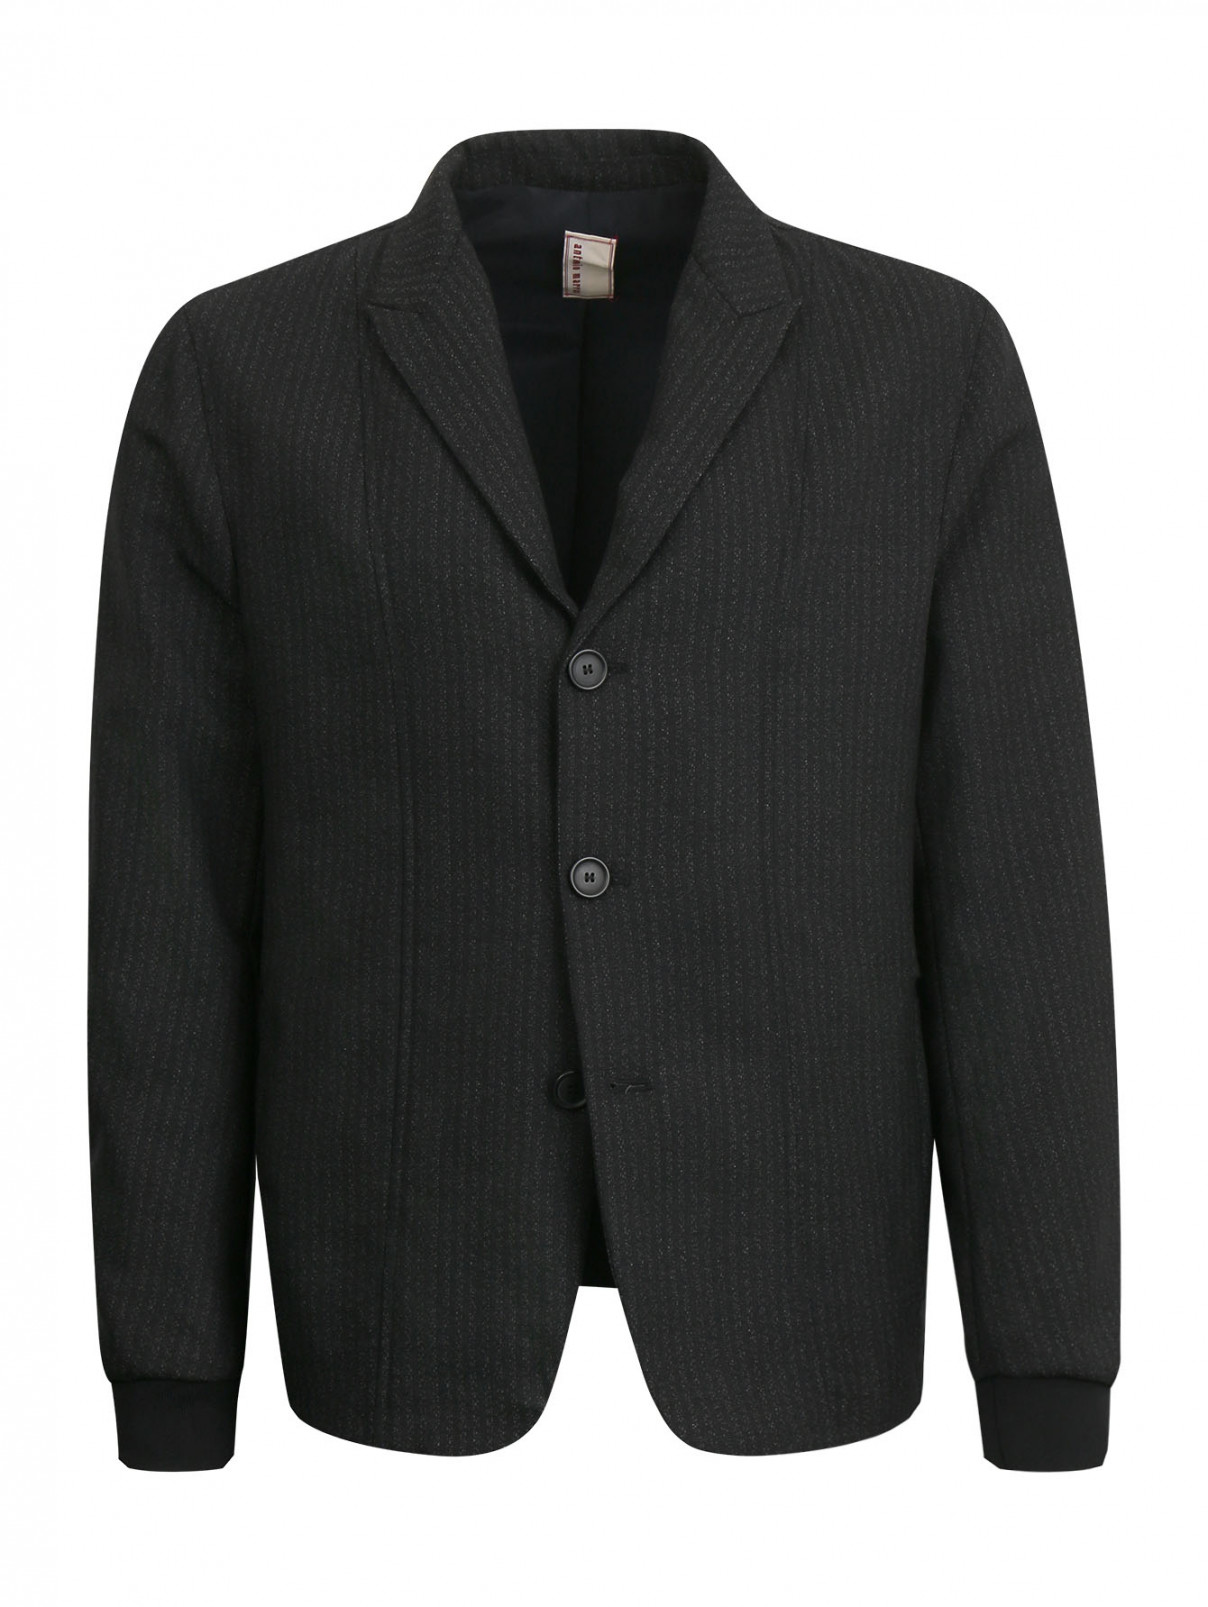 Пиджак с боковыми карманами на молнии Antonio Marras  –  Общий вид  – Цвет:  Черный